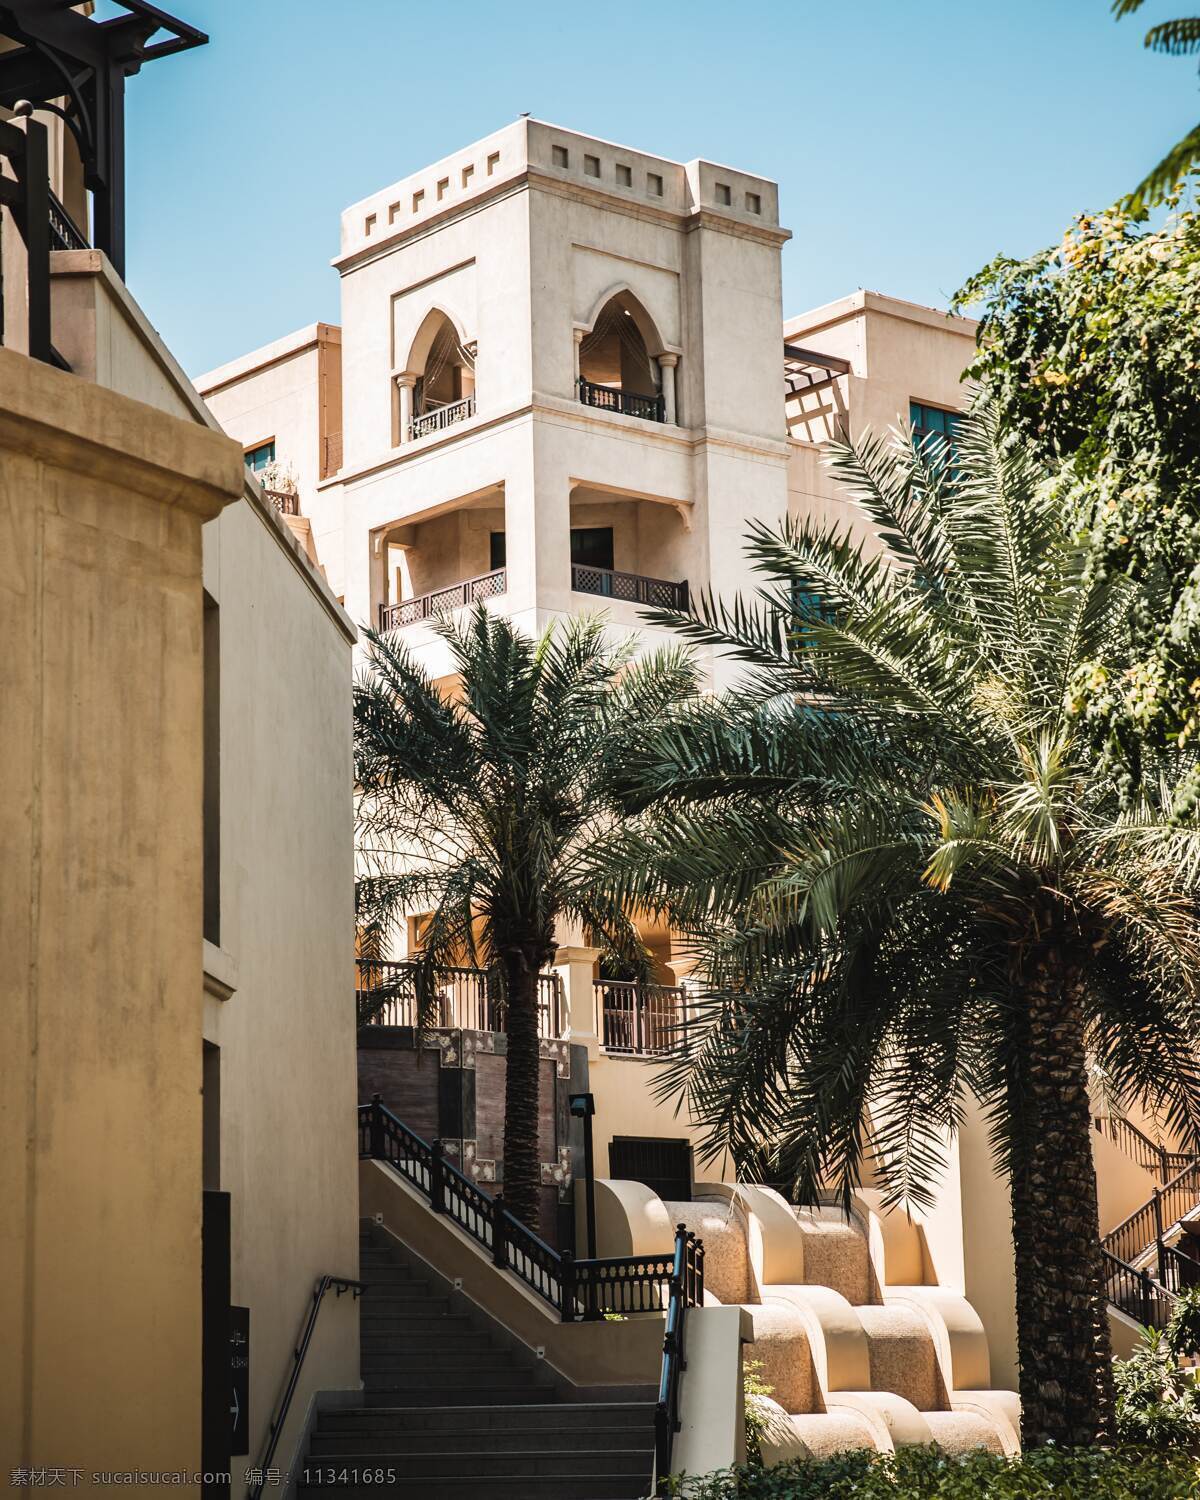 迪拜图片 迪拜 中东 阿拉伯 波斯湾 帆船酒店 城市 都市 沙漠 骆驼 哈利法塔 棕榈树 棕榈岛 旅游摄影 国外旅游